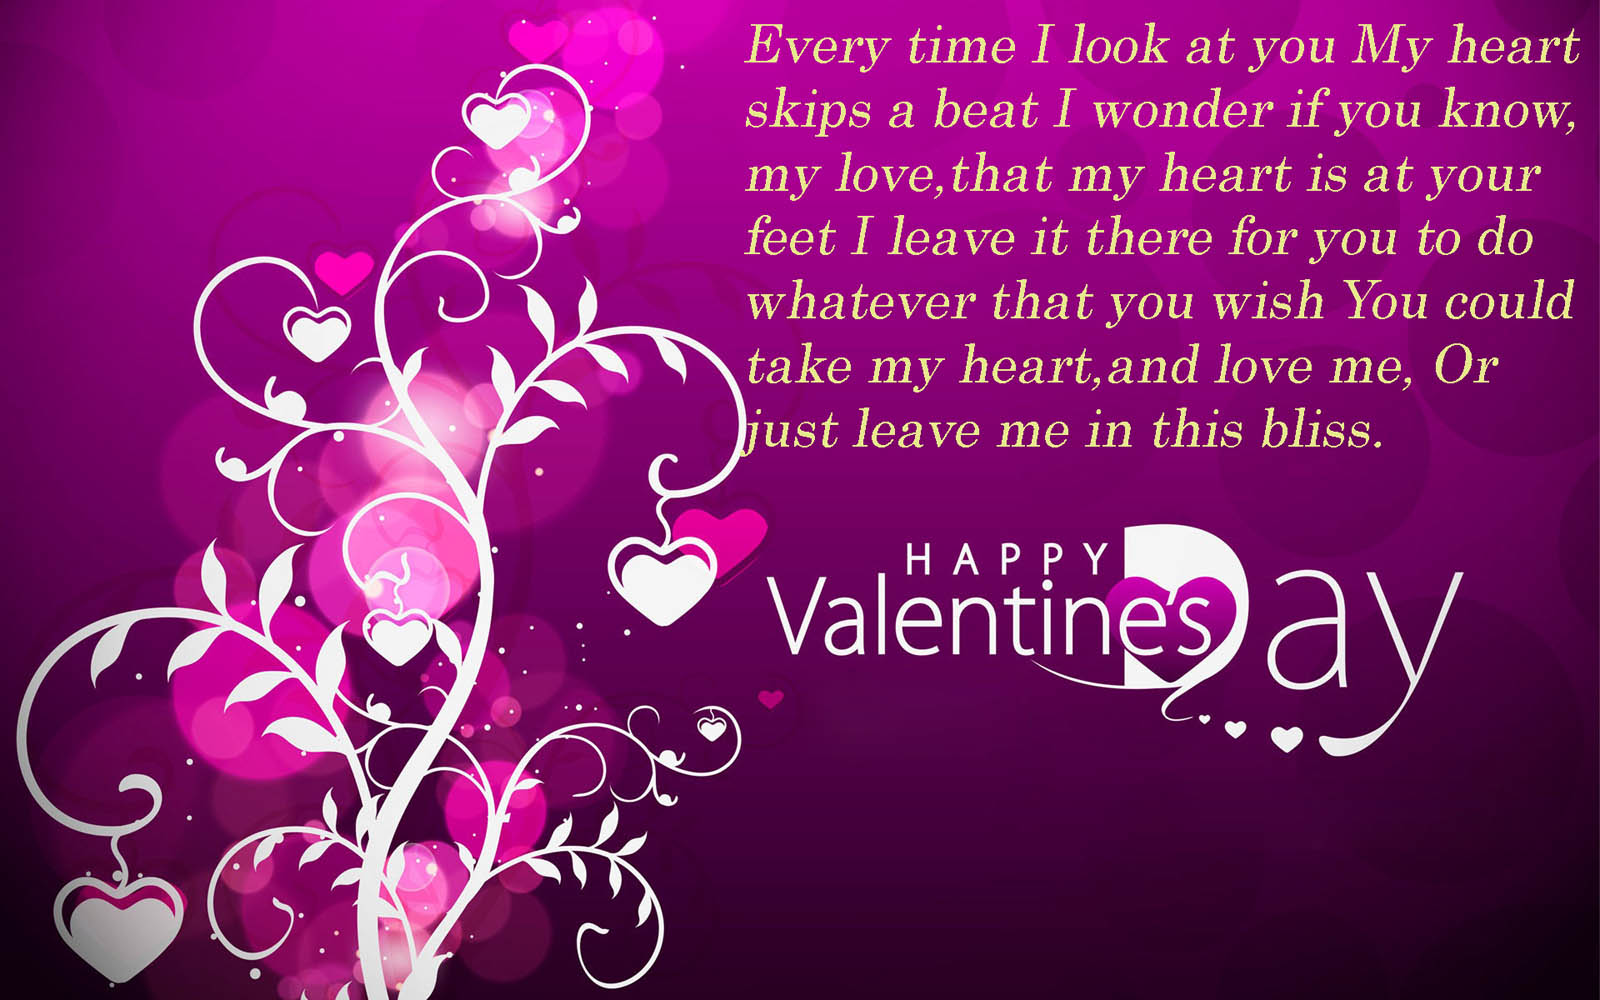 sfondo del messaggio,testo,viola,cuore,rosa,viola